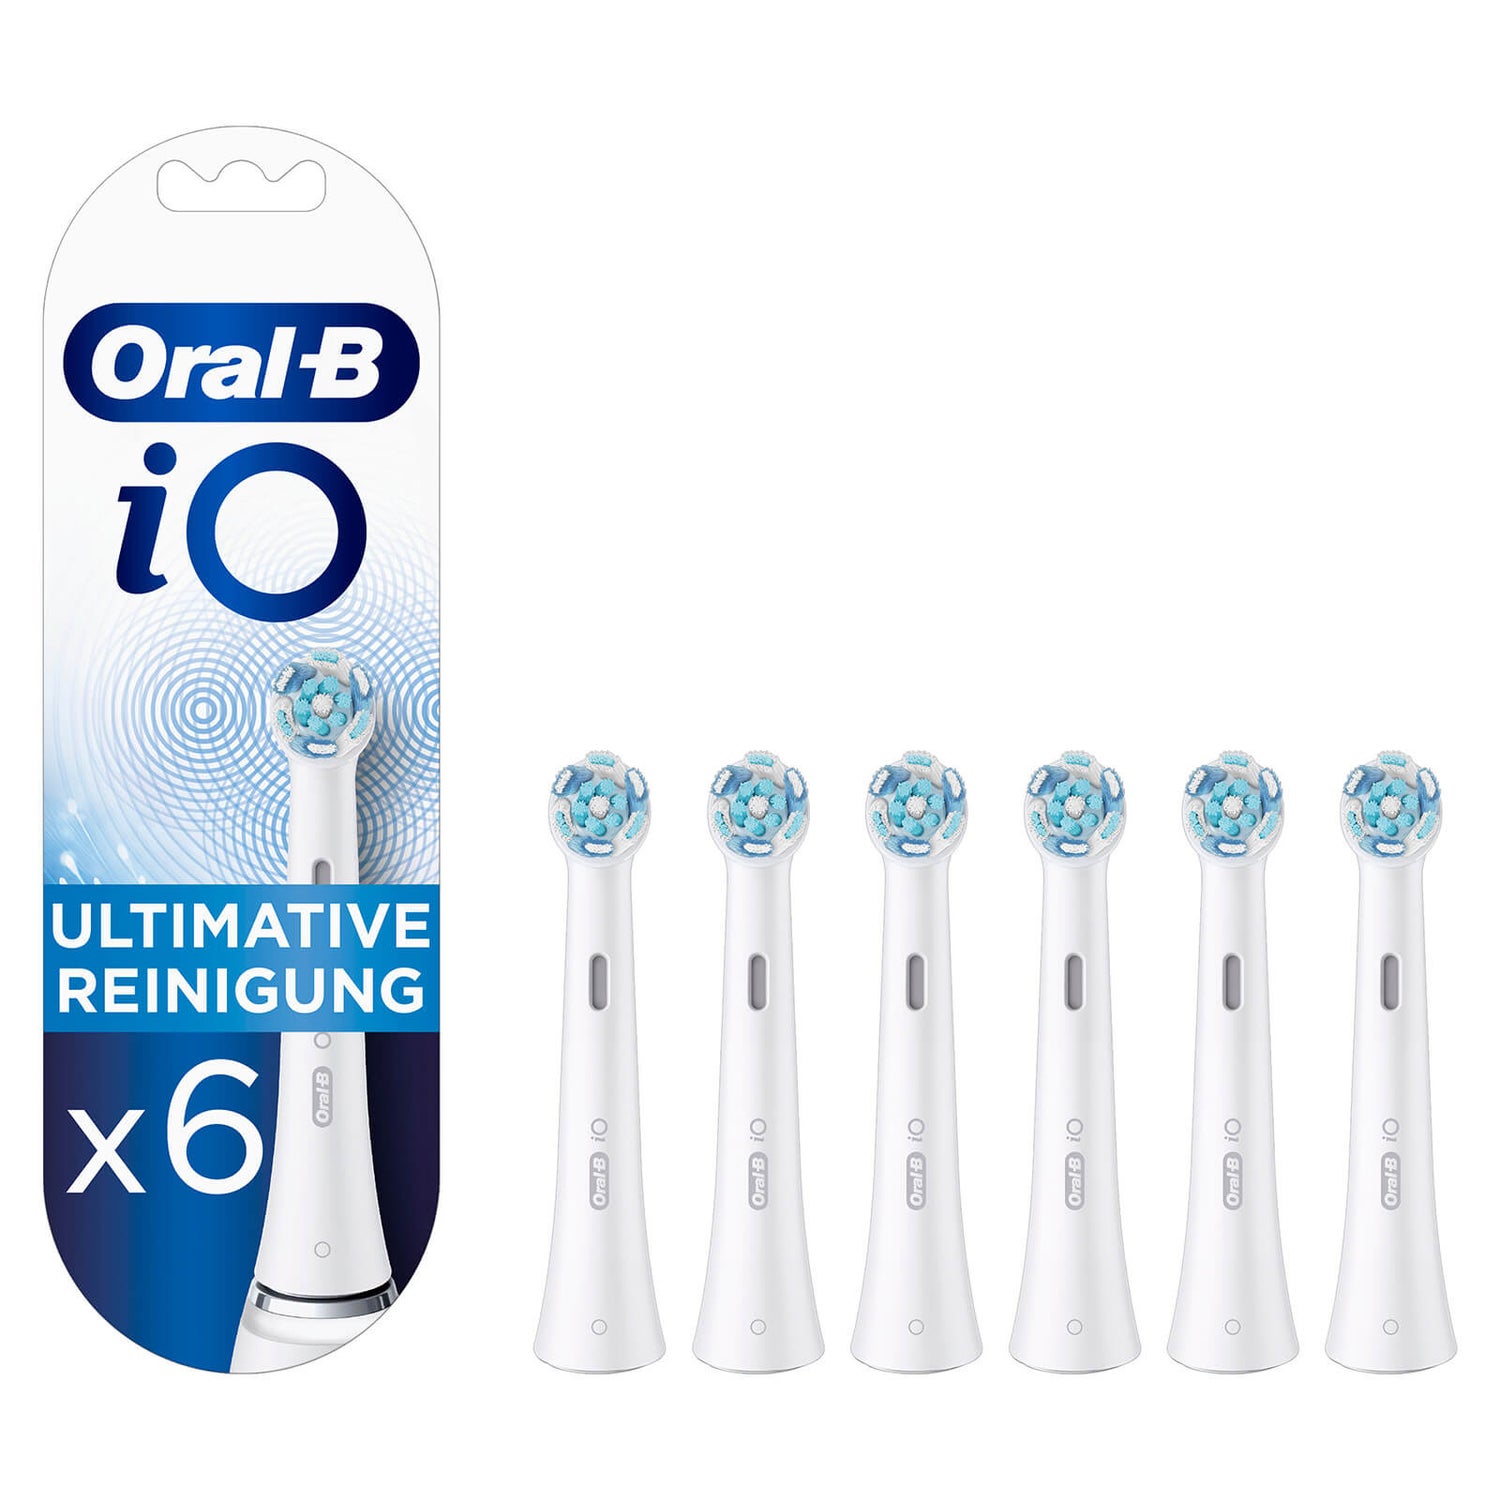 Oral-B Aufsteckbürsten iO Ultimative Reinigung 6er | Oral-B DE | Zahnreinigung & Zahnpflege